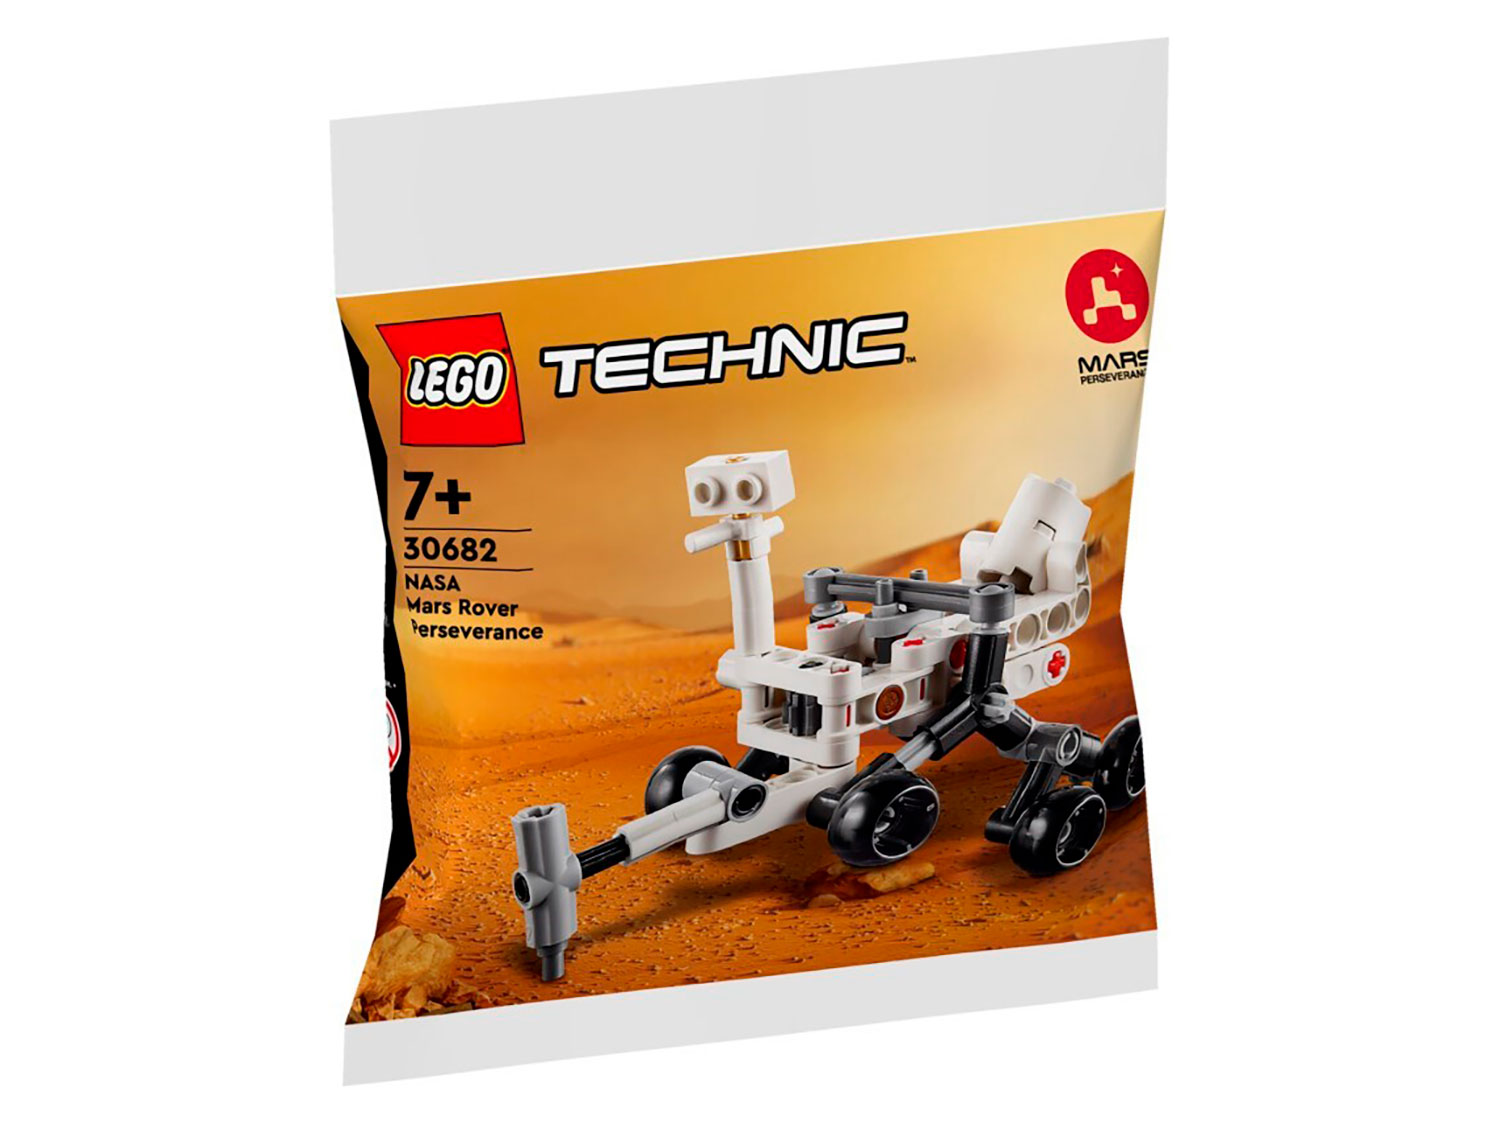 Конструктор Lego polybag Марсоход NASA Perseverance 30682, 83 дет конструктор lego ideas ракетно космическая система nasa сатурн 5 апполон 92176